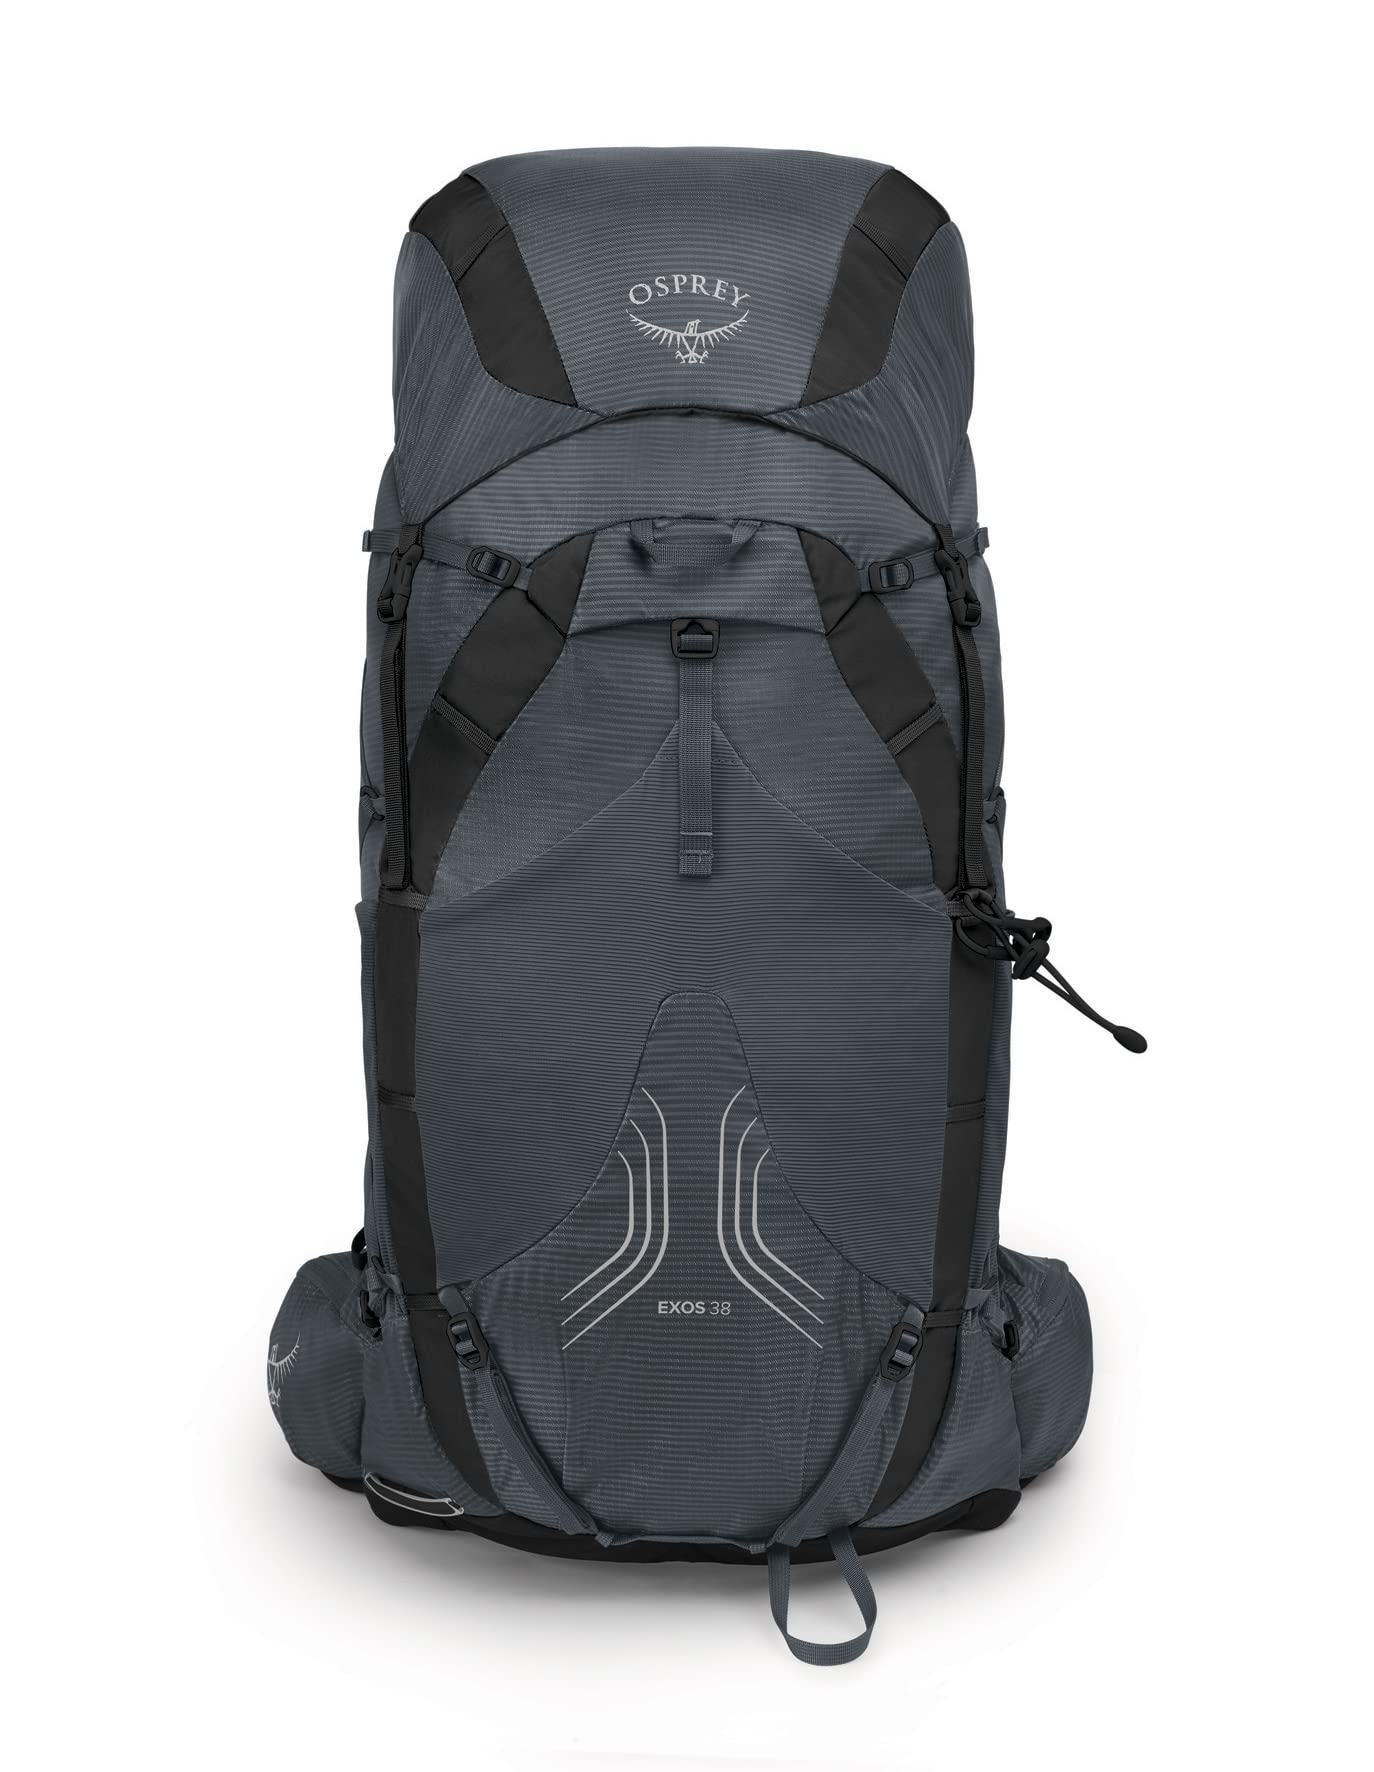 Osprey Exos 38 Men's Ultralight Backpacking Backpack